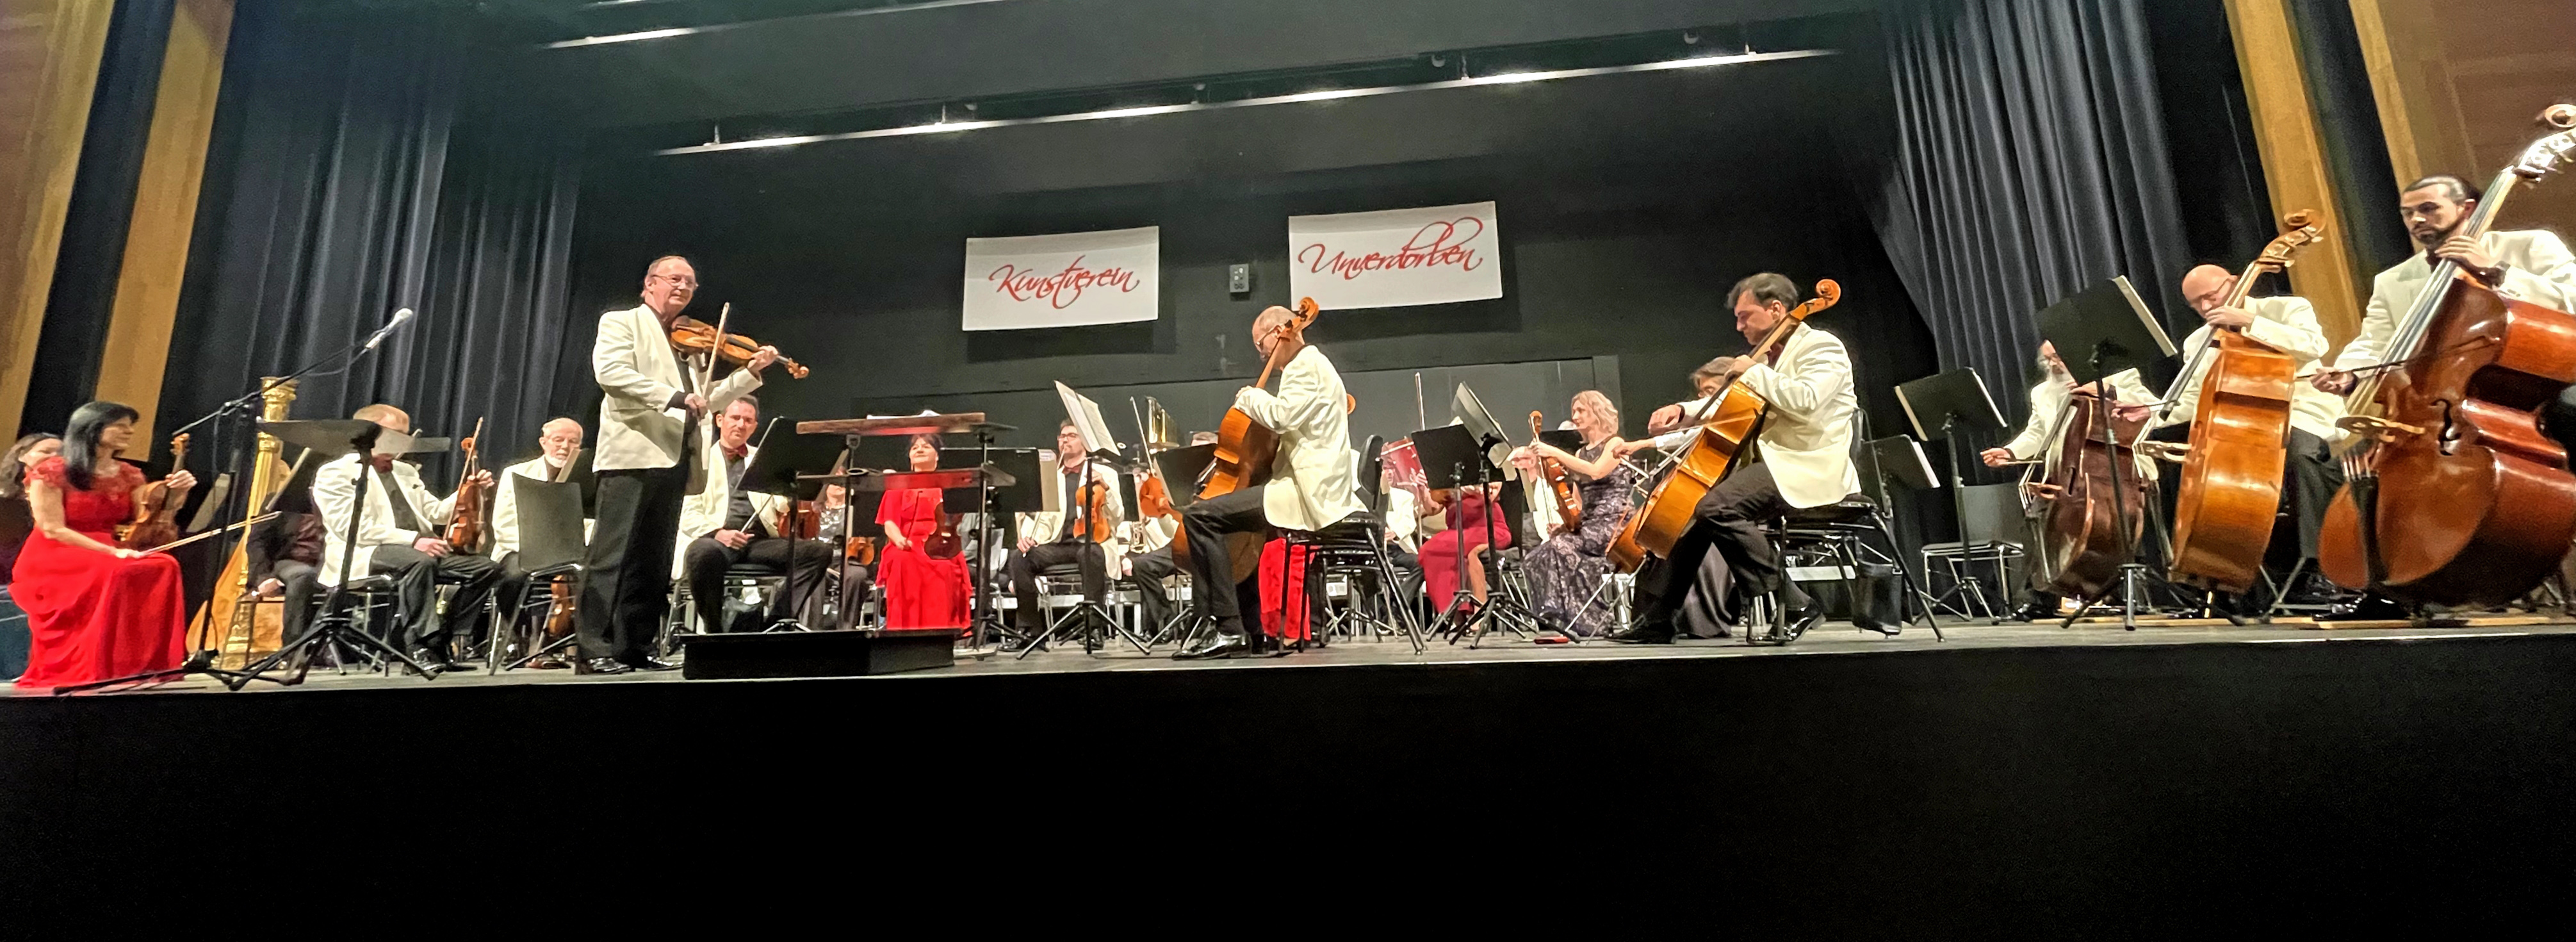 Die Vogtland Philharmonie unter Leitung von Dorian Keilhack überzeugte das Neunburger Publikum auch beim Neujahrskonzert mit einer formidablen Orchesterleistung. Foto: Stephan Wunder